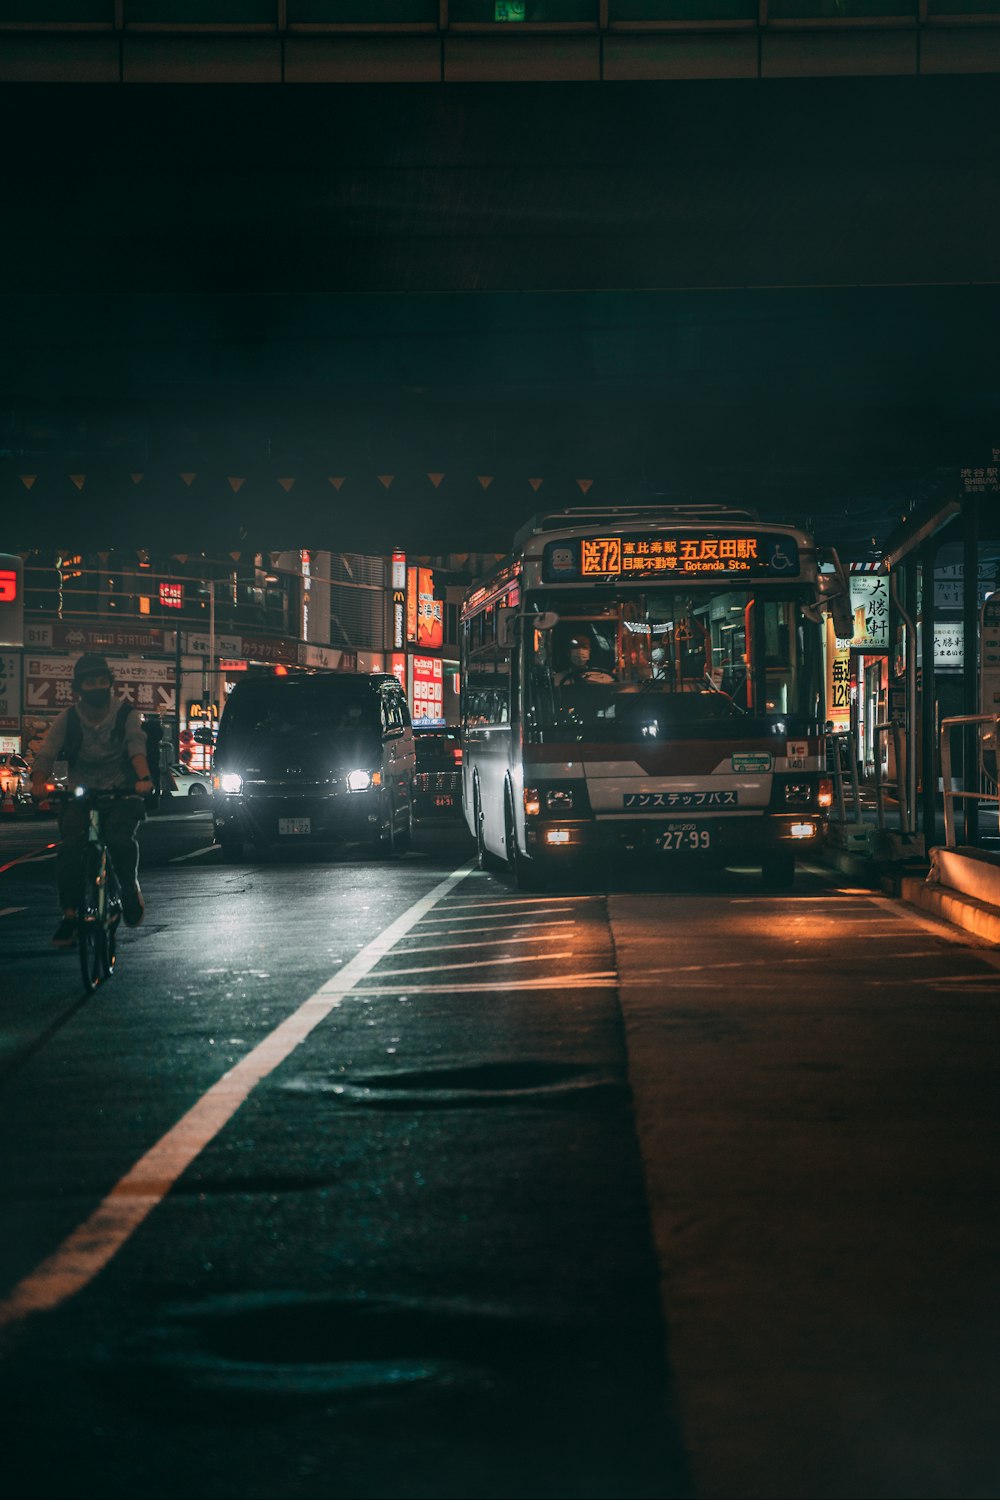 Autobús rojo de dos pisos en carretera durante la noche